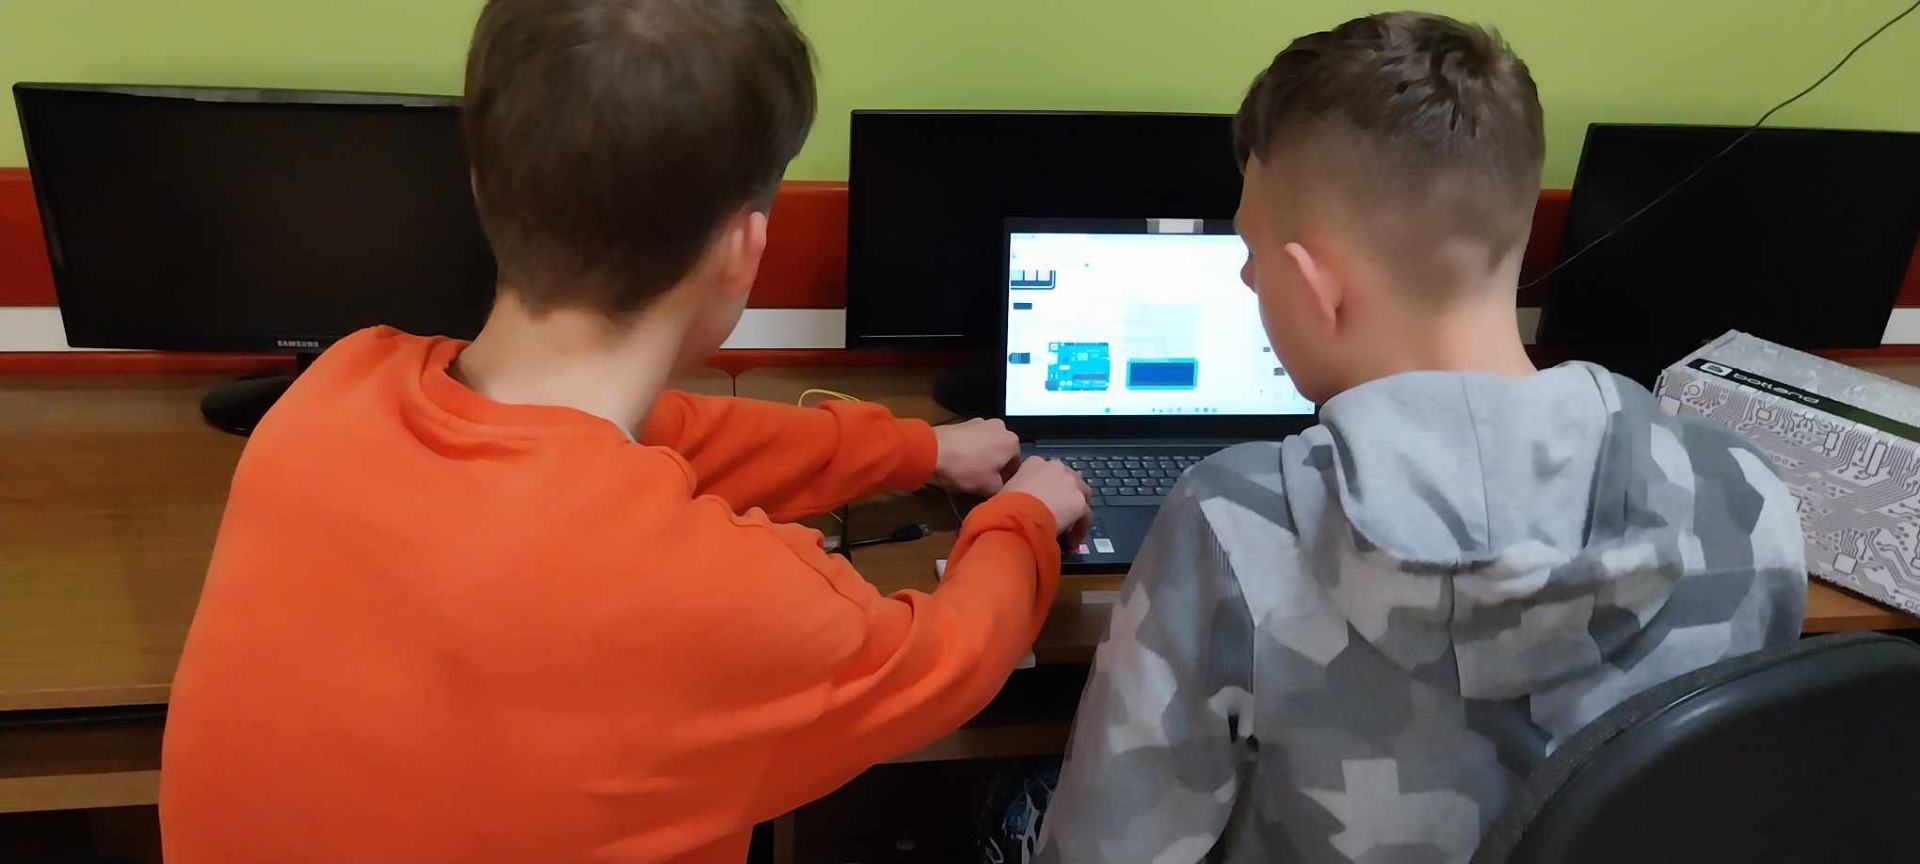 Uczniowie podczas pracy nad projektem interaktywnej klawiatury programowanej w środowisku Arduino.